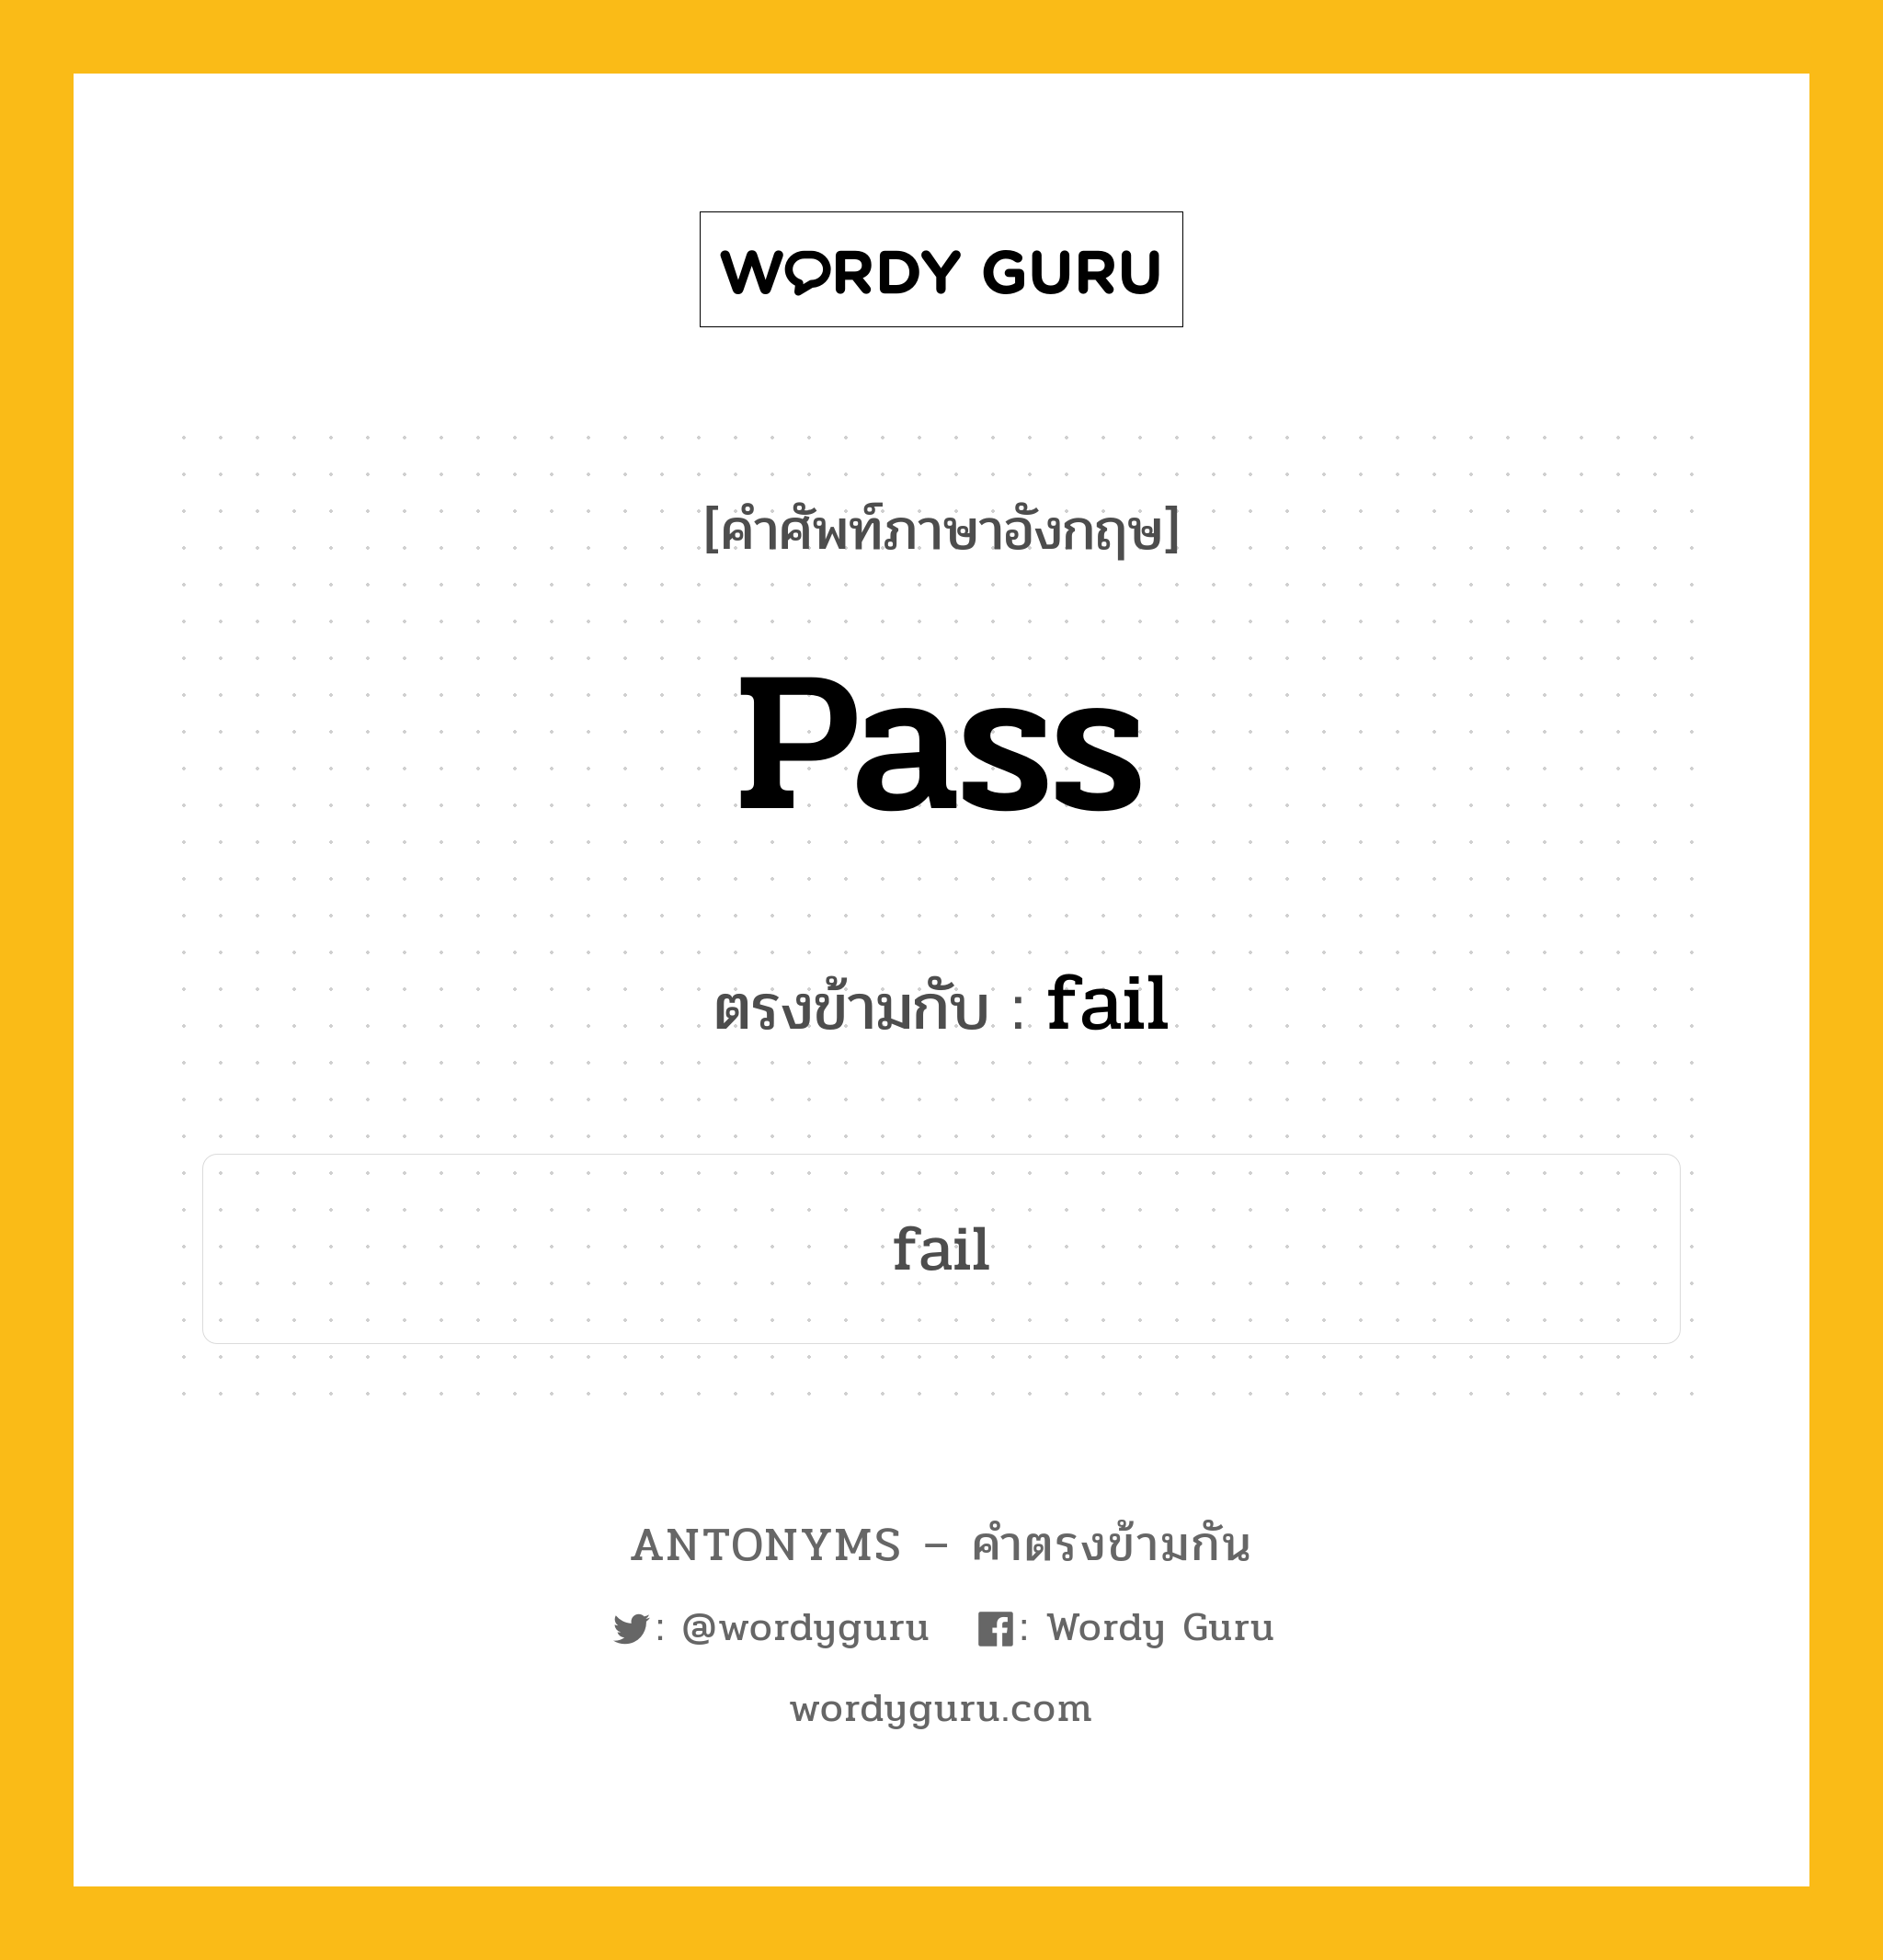 pass เป็นคำตรงข้ามกับคำไหนบ้าง?, คำศัพท์ภาษาอังกฤษ pass ตรงข้ามกับ fail หมวด fail